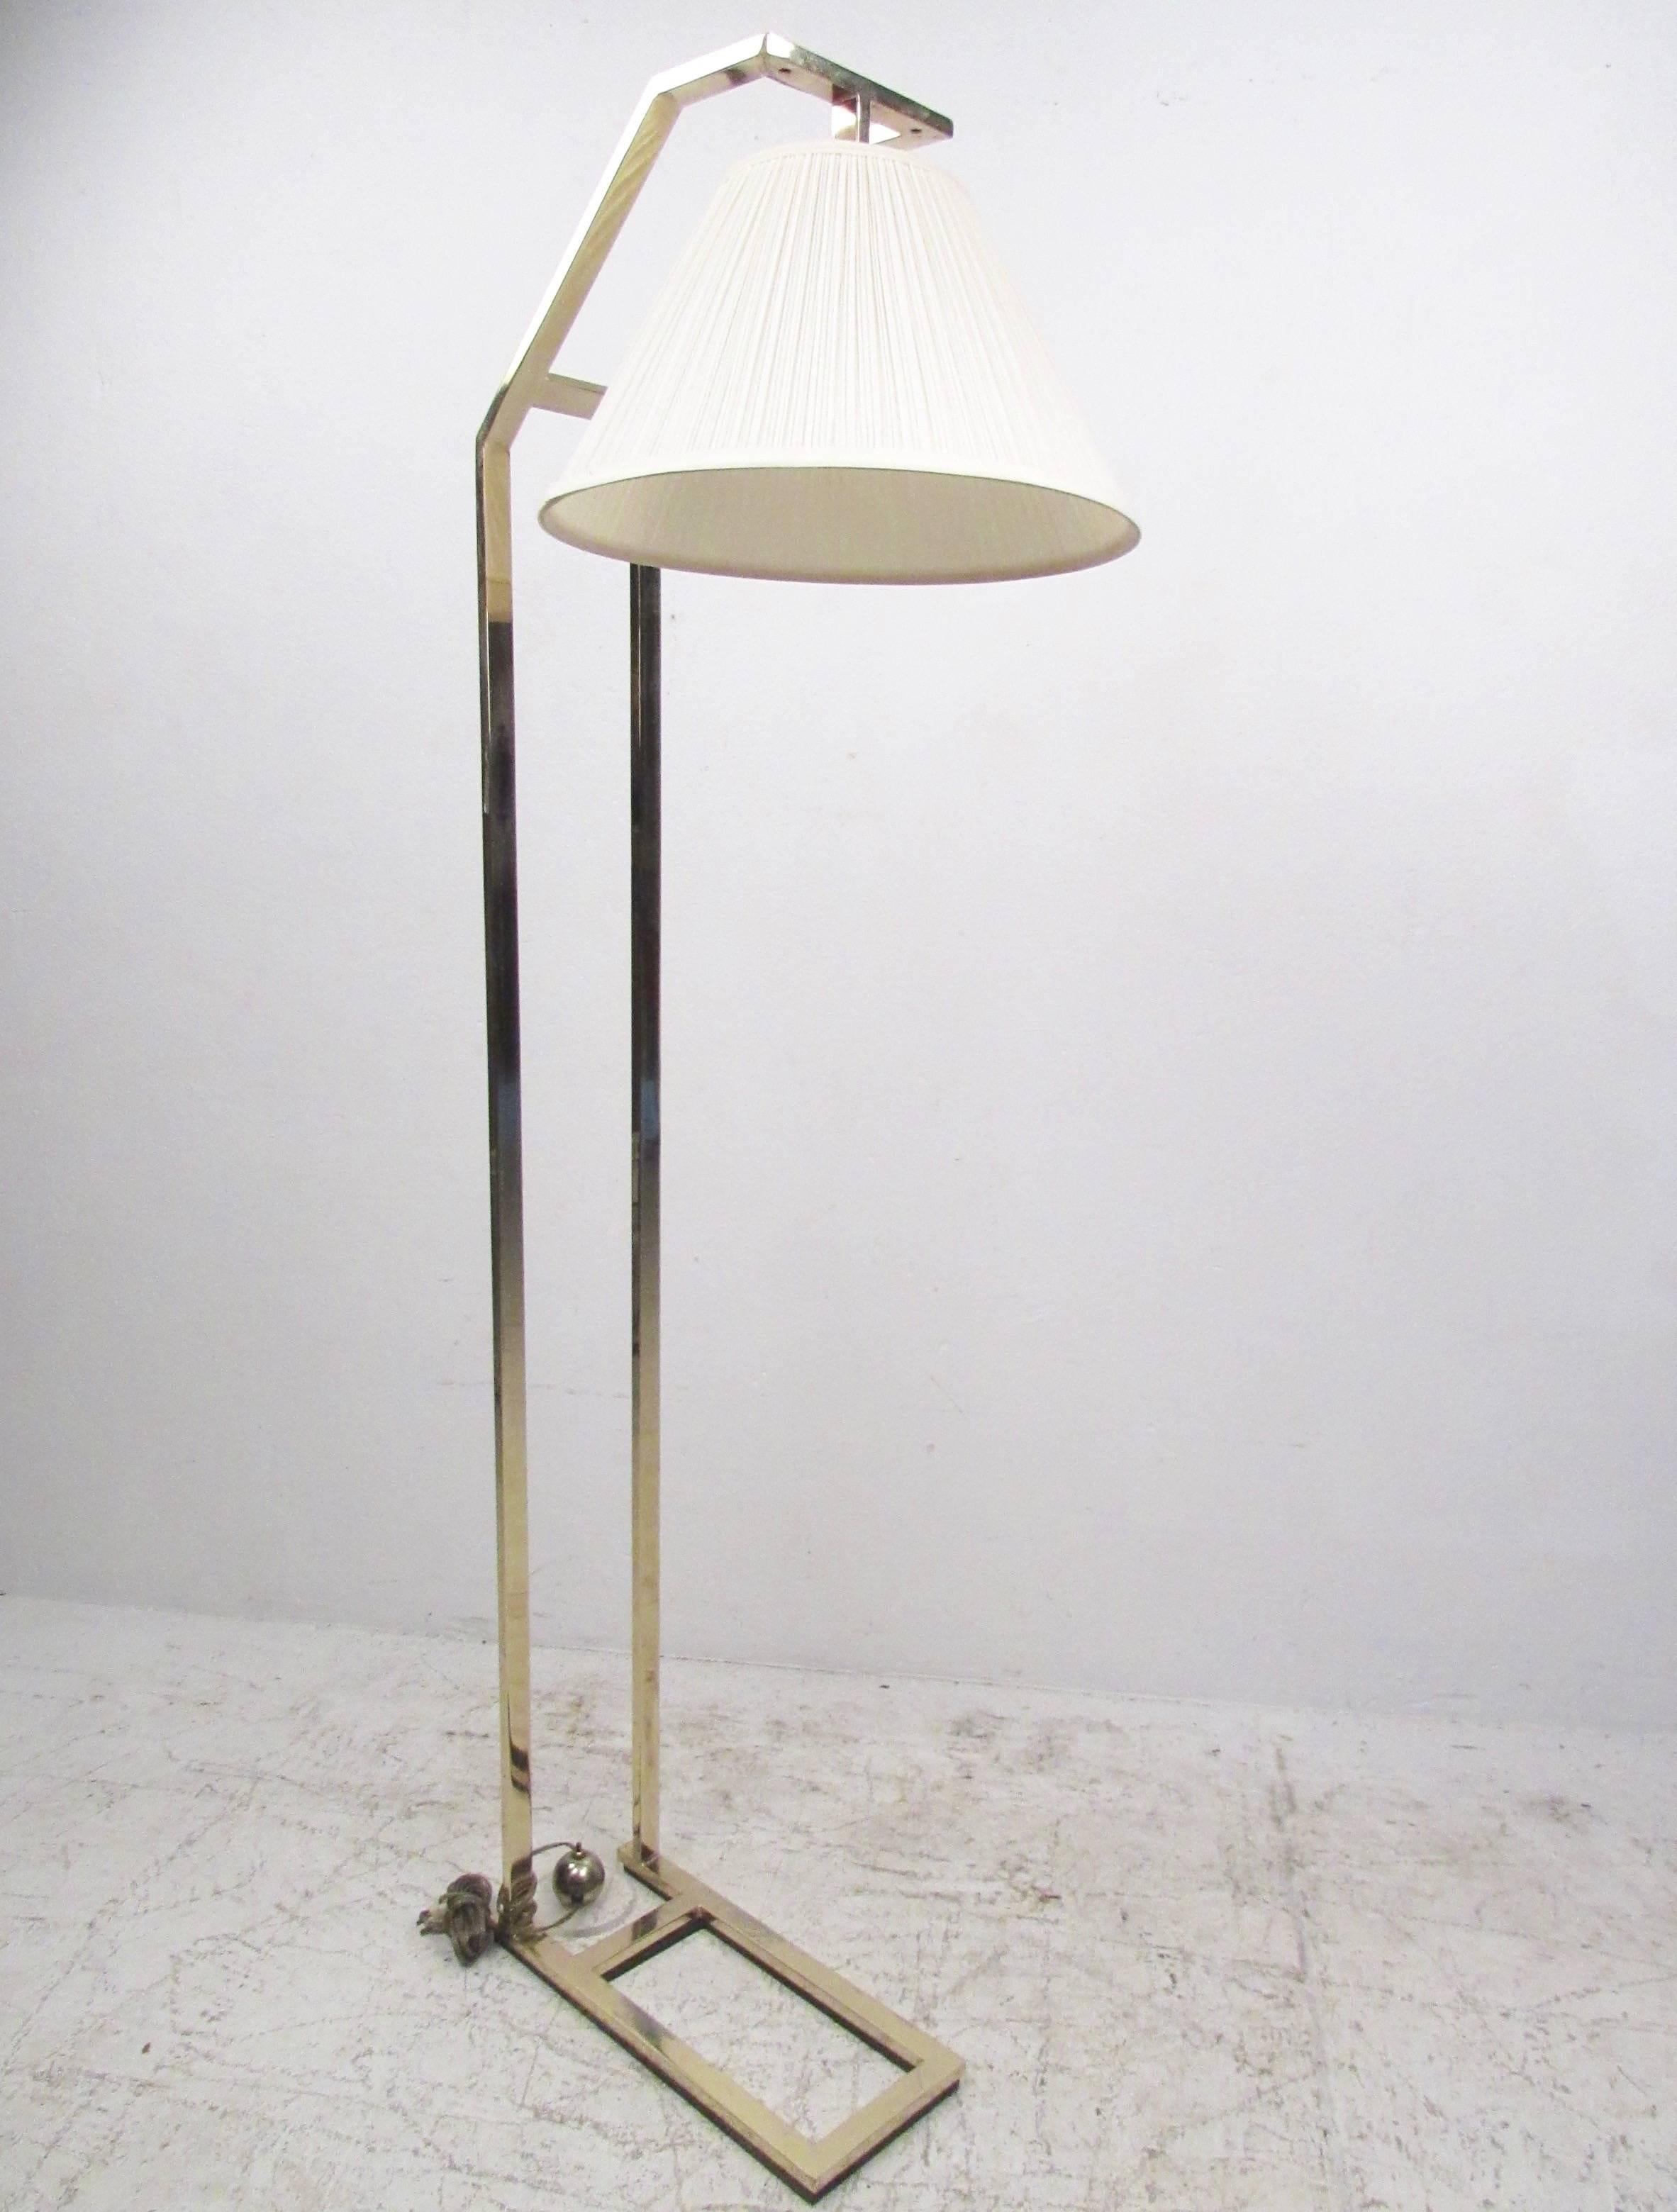 Ce lampadaire contemporain de style cantilever présente un design simpliste mais élégant, avec une courbure élégante qui en fait une lampe de lecture idéale pour tout espace d'assise moderniste. La finition en laiton et le large abat-jour en tissu